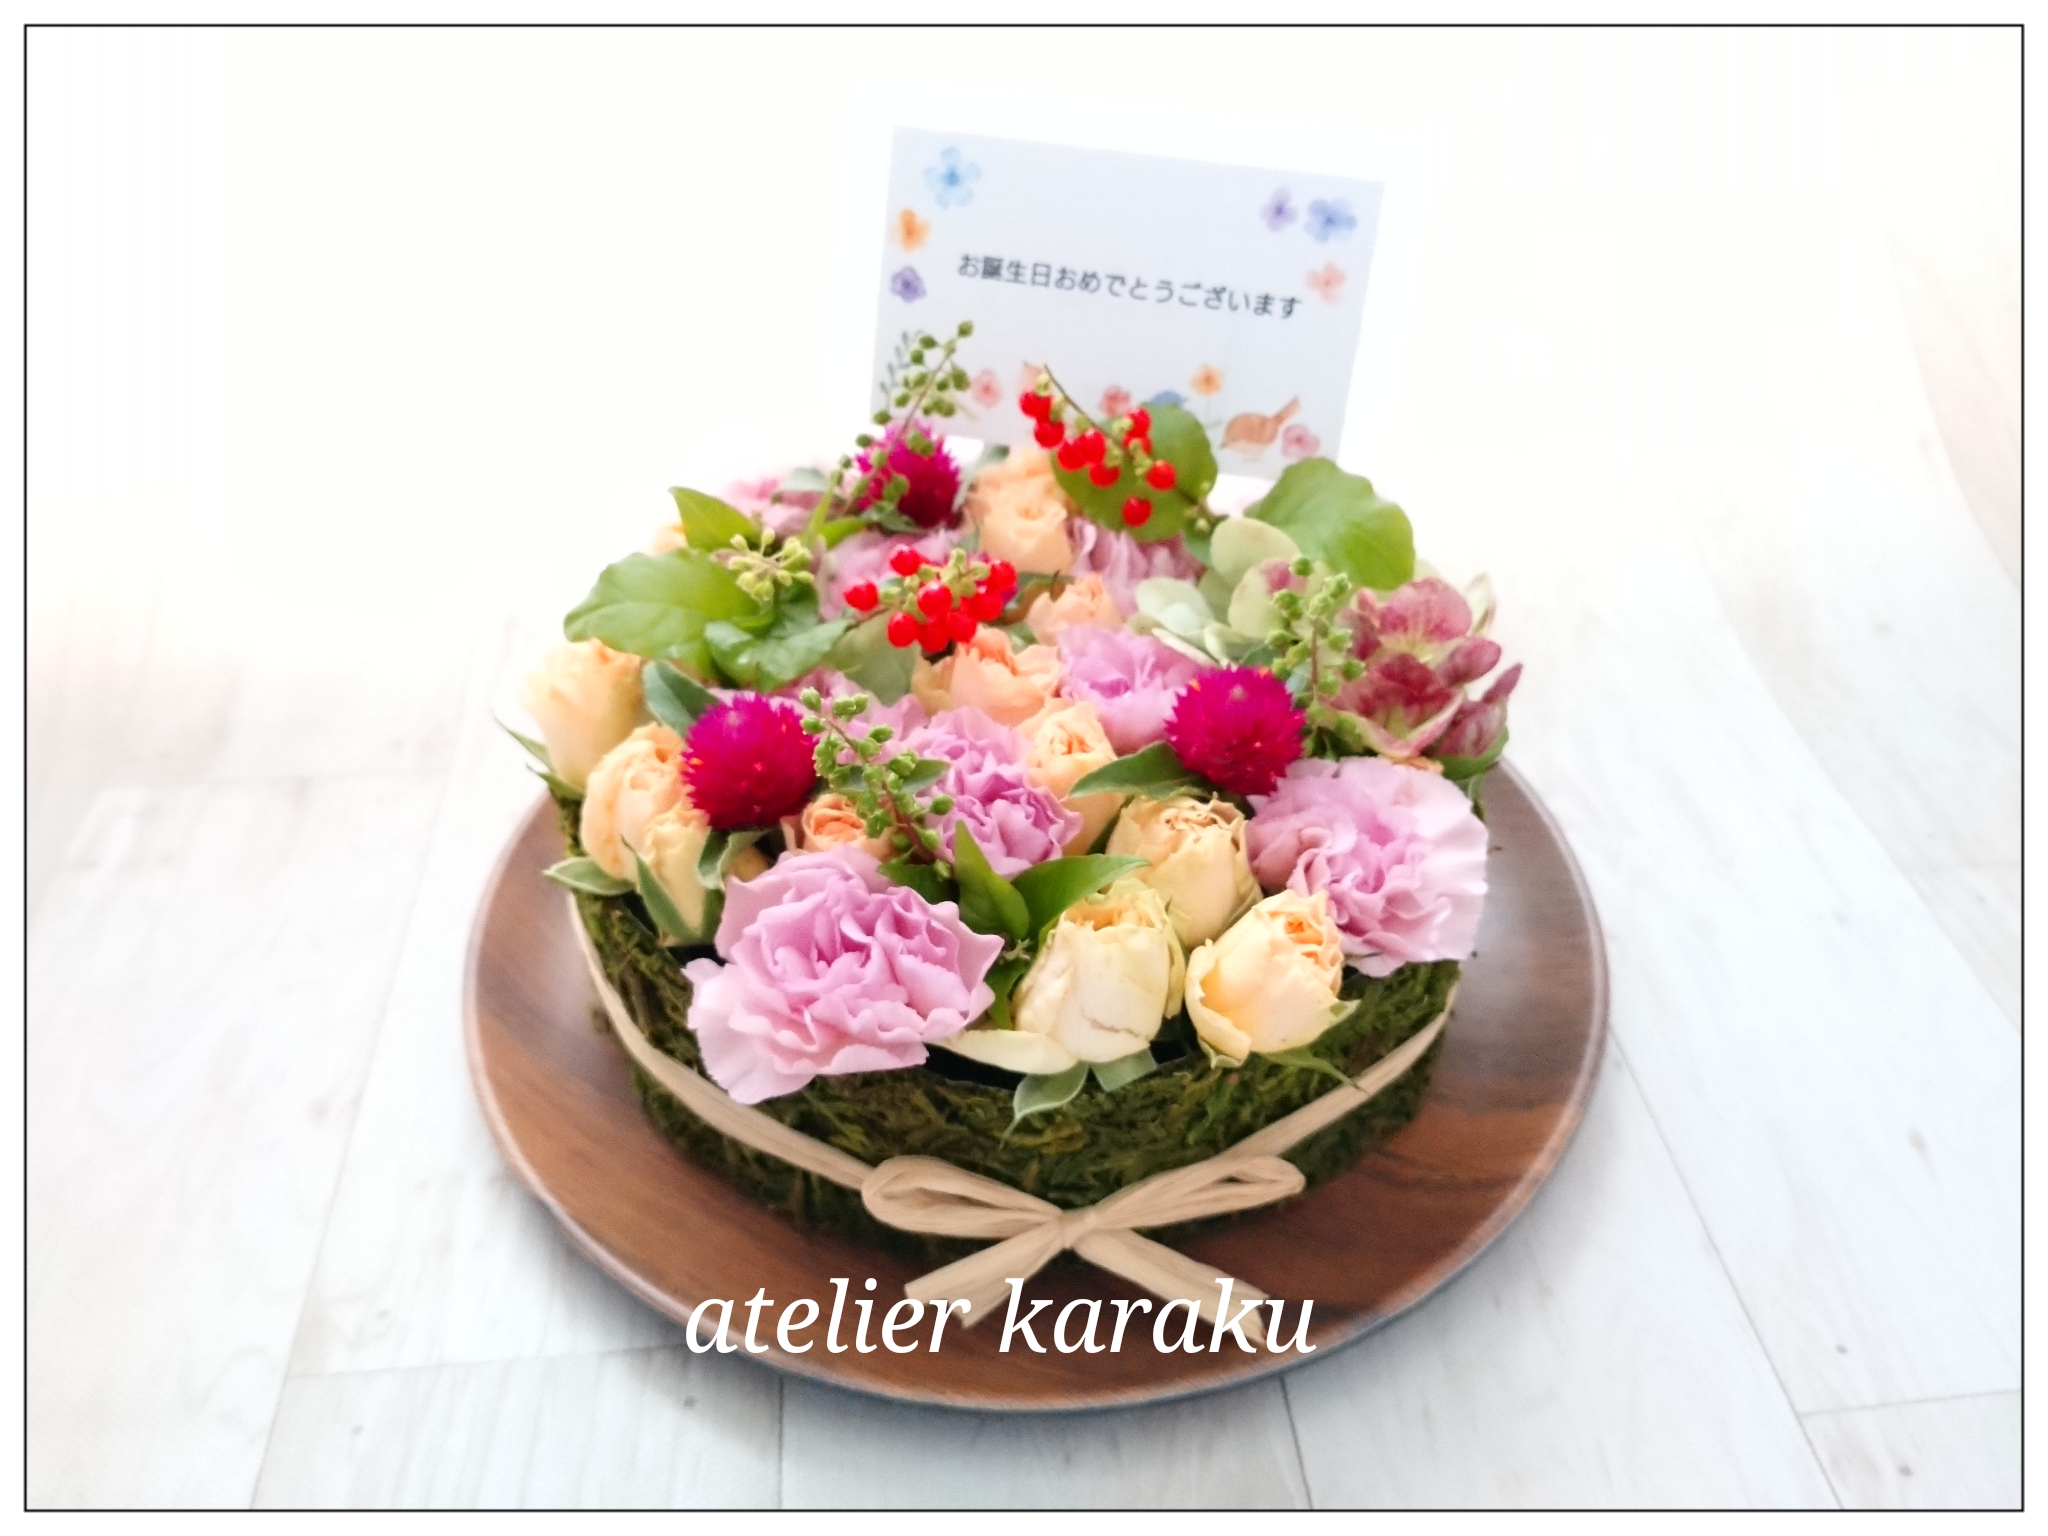 生花 フラワーケーキ 生花を飾ろう 季節のお任せ花材 Iichi ハンドメイド クラフト作品 手仕事品の通販